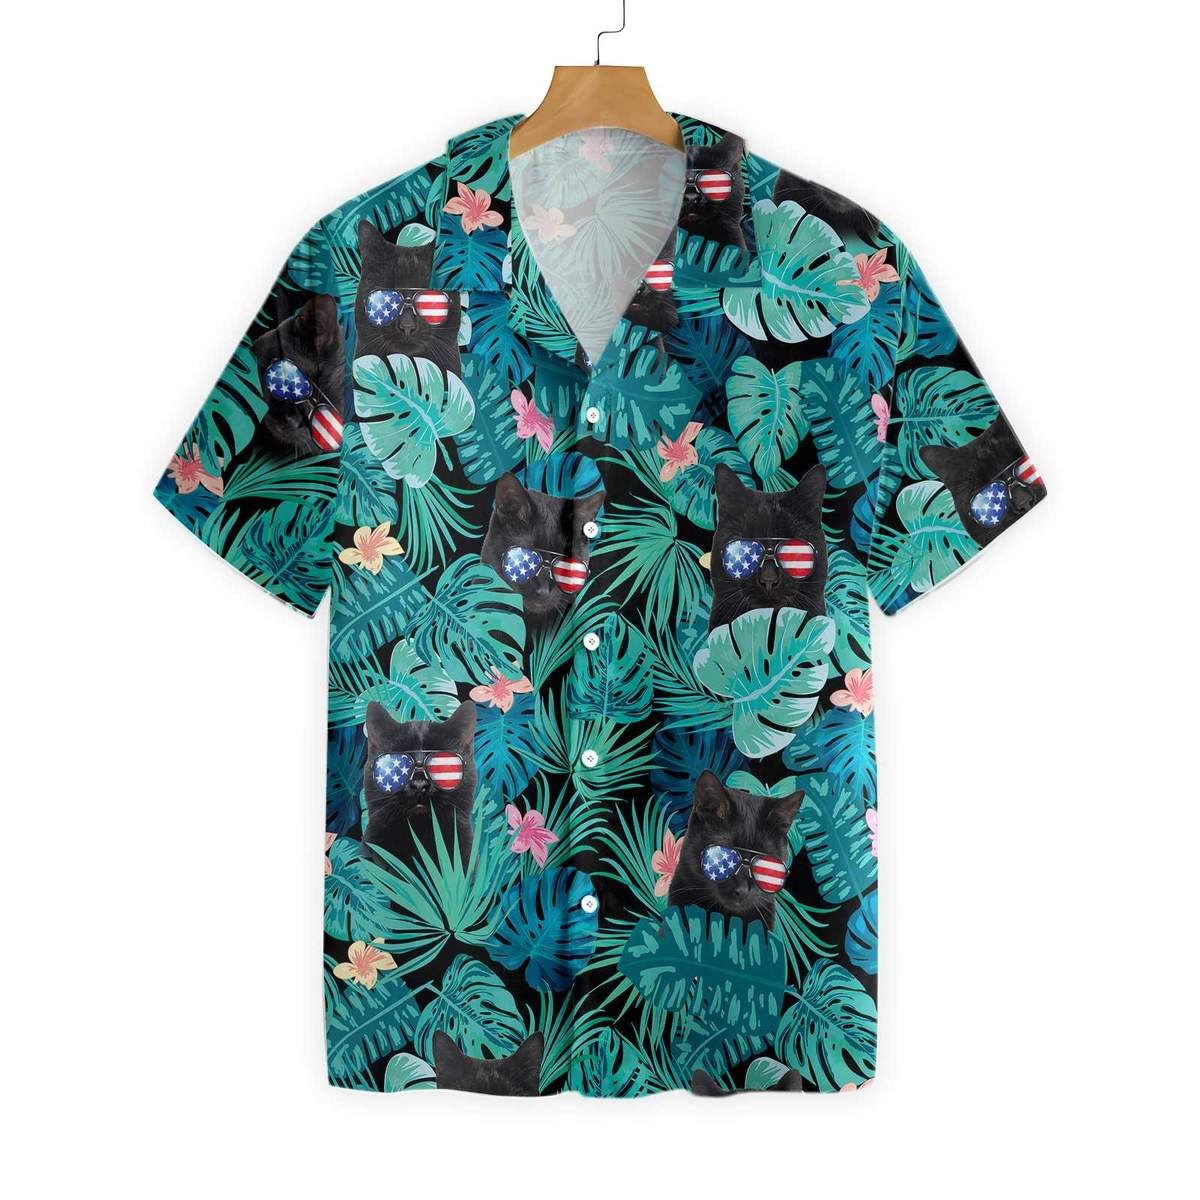 Black Cat Tropical 4th Of July Hawaiian Shirt/ Tropical Flower Hawaiian Shirt/ Summer Vacation